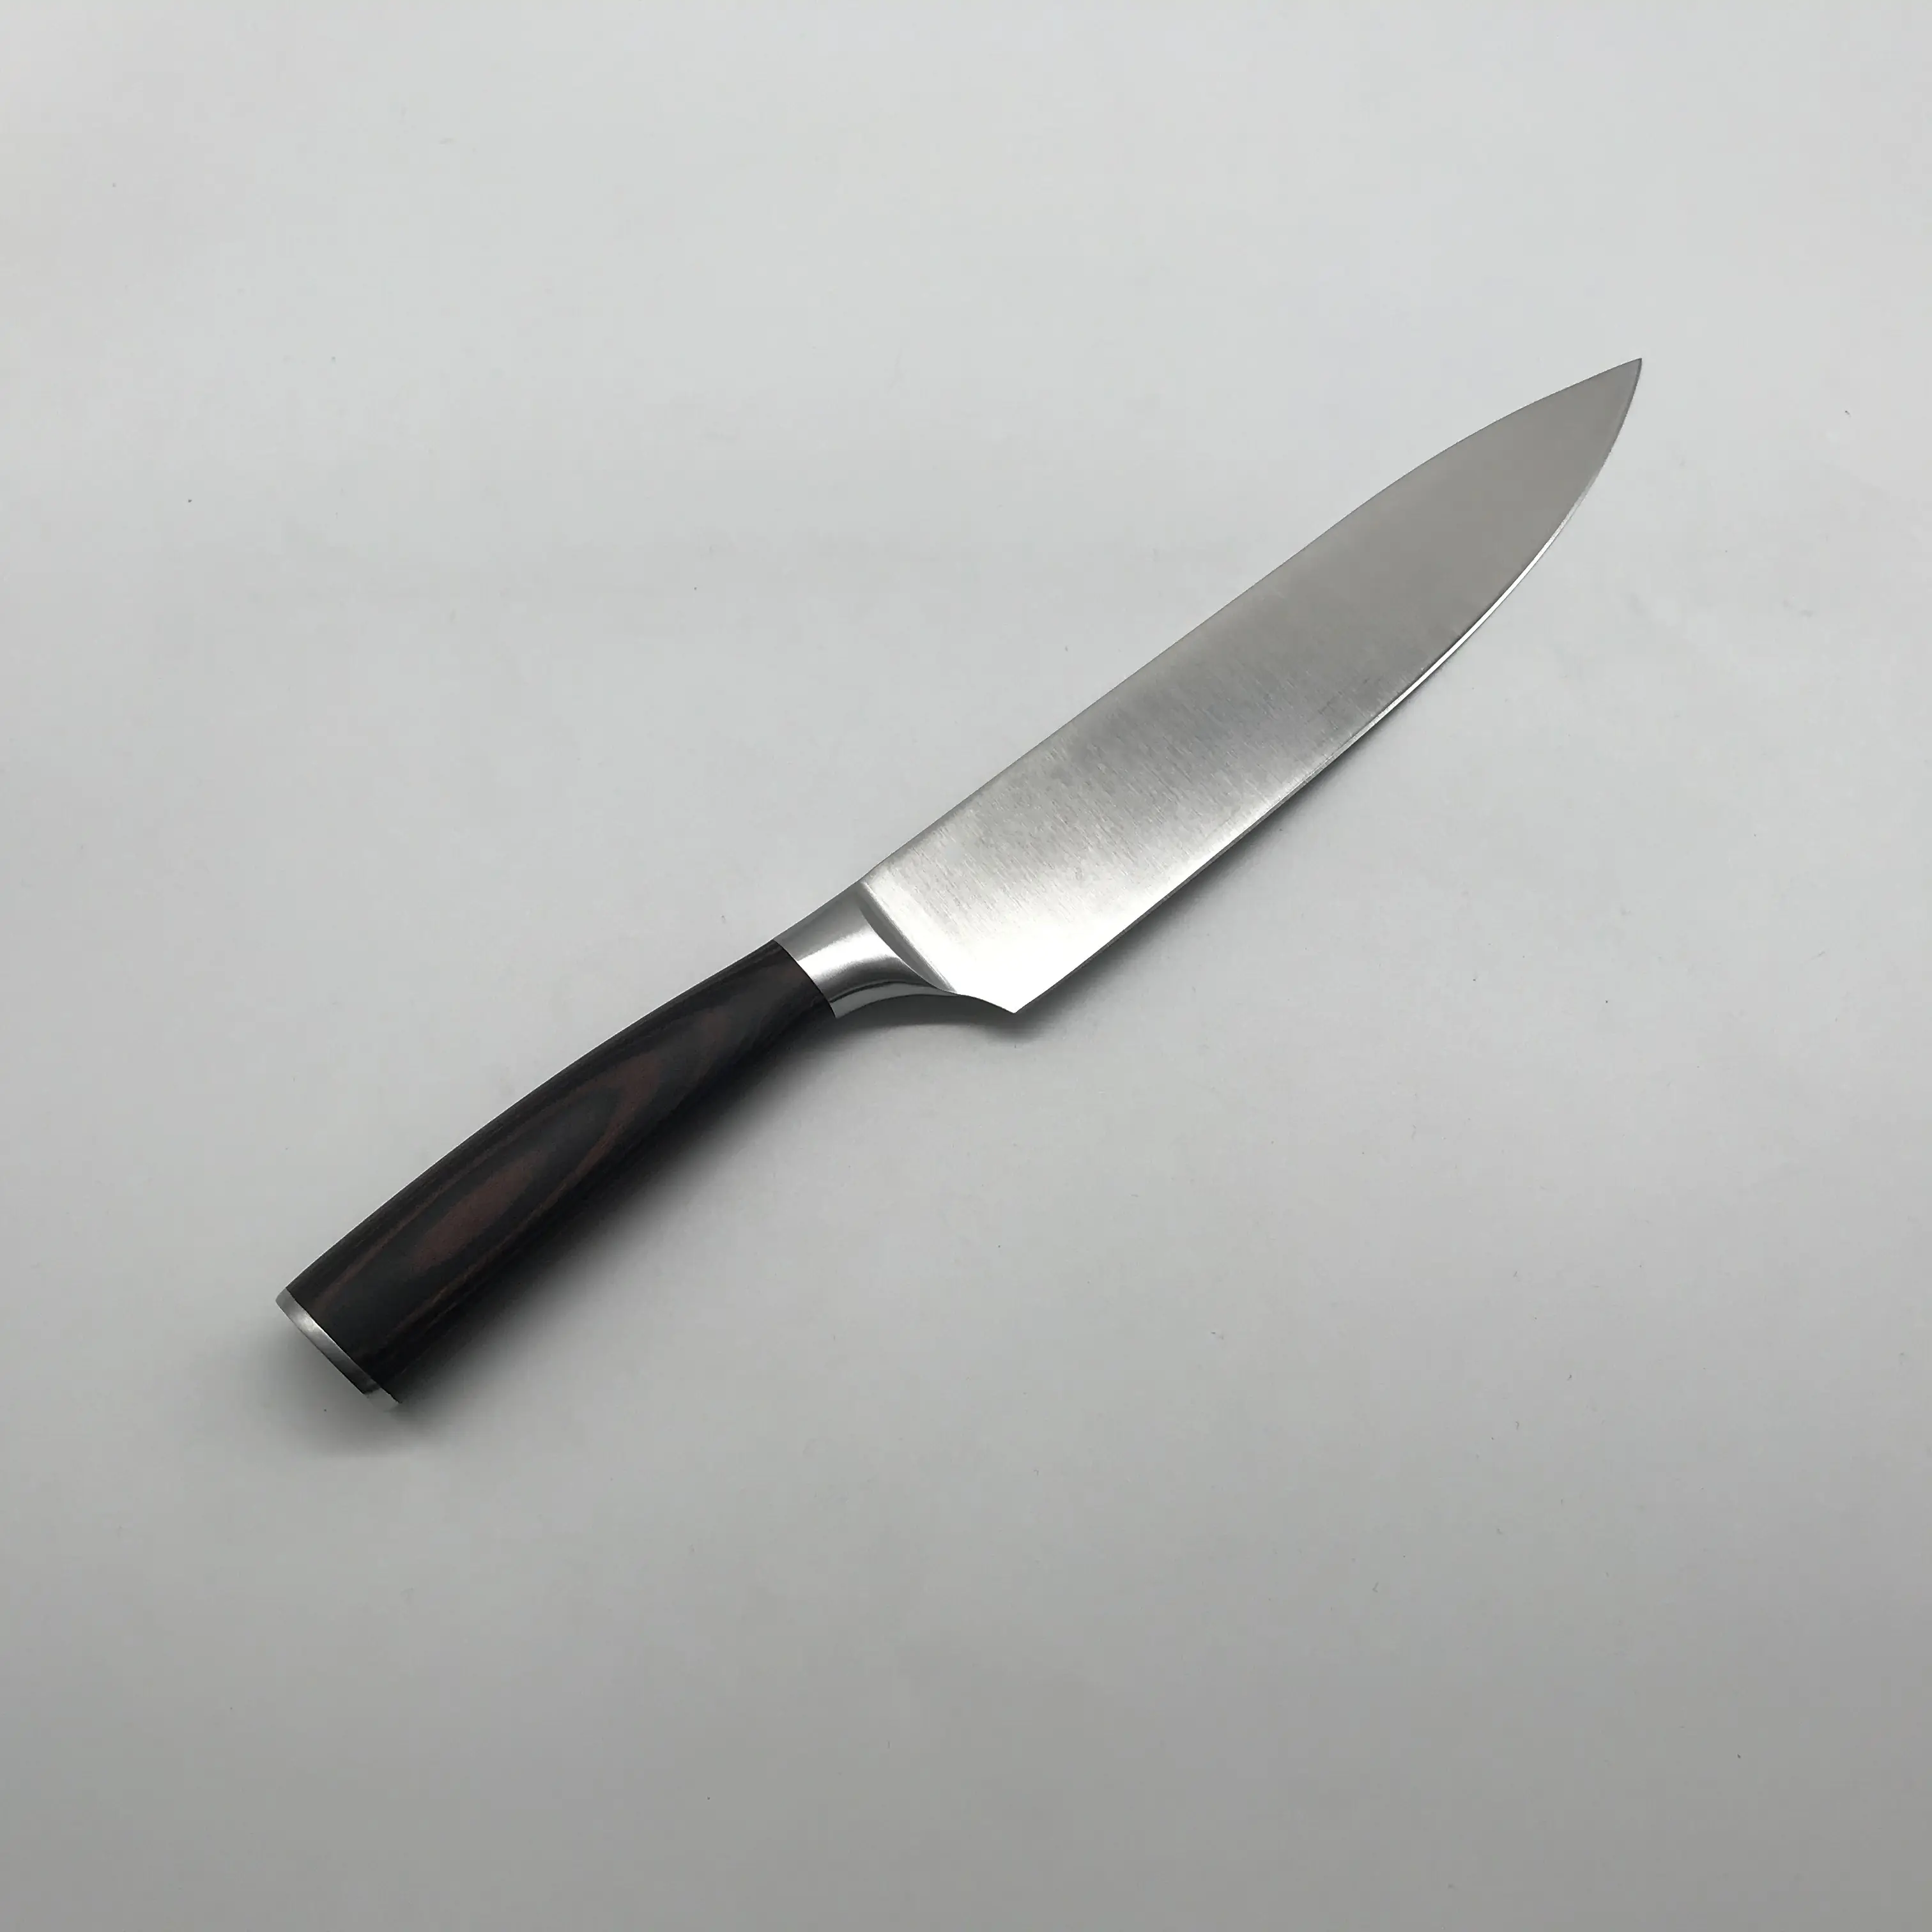 Faca de chef de aço Damasco requintada faca de cozinha faca de cozinha